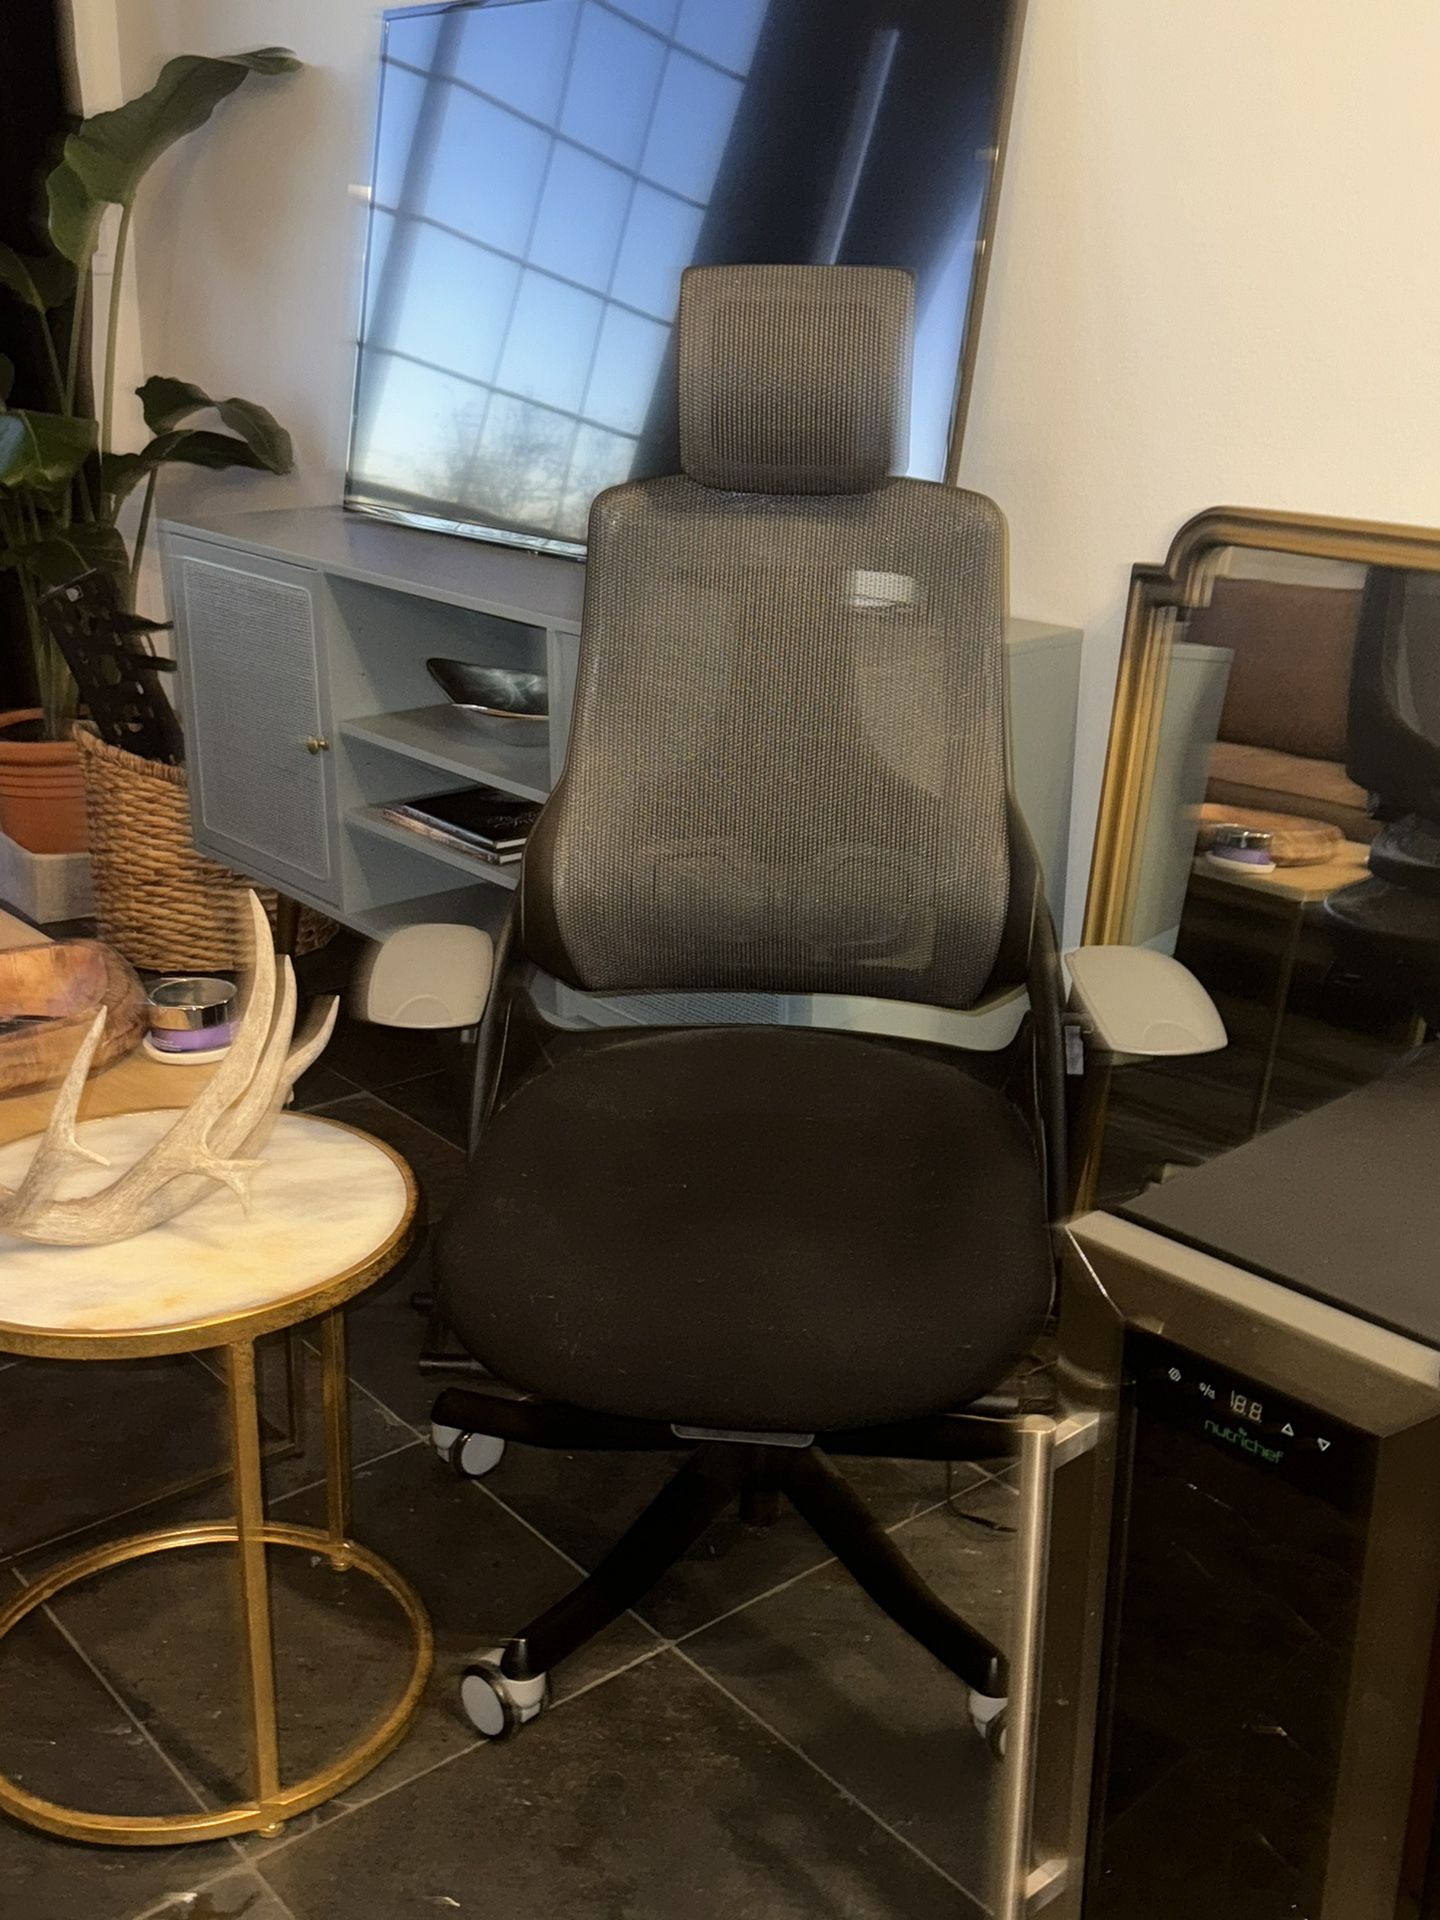 Modern Desk Chair For $40